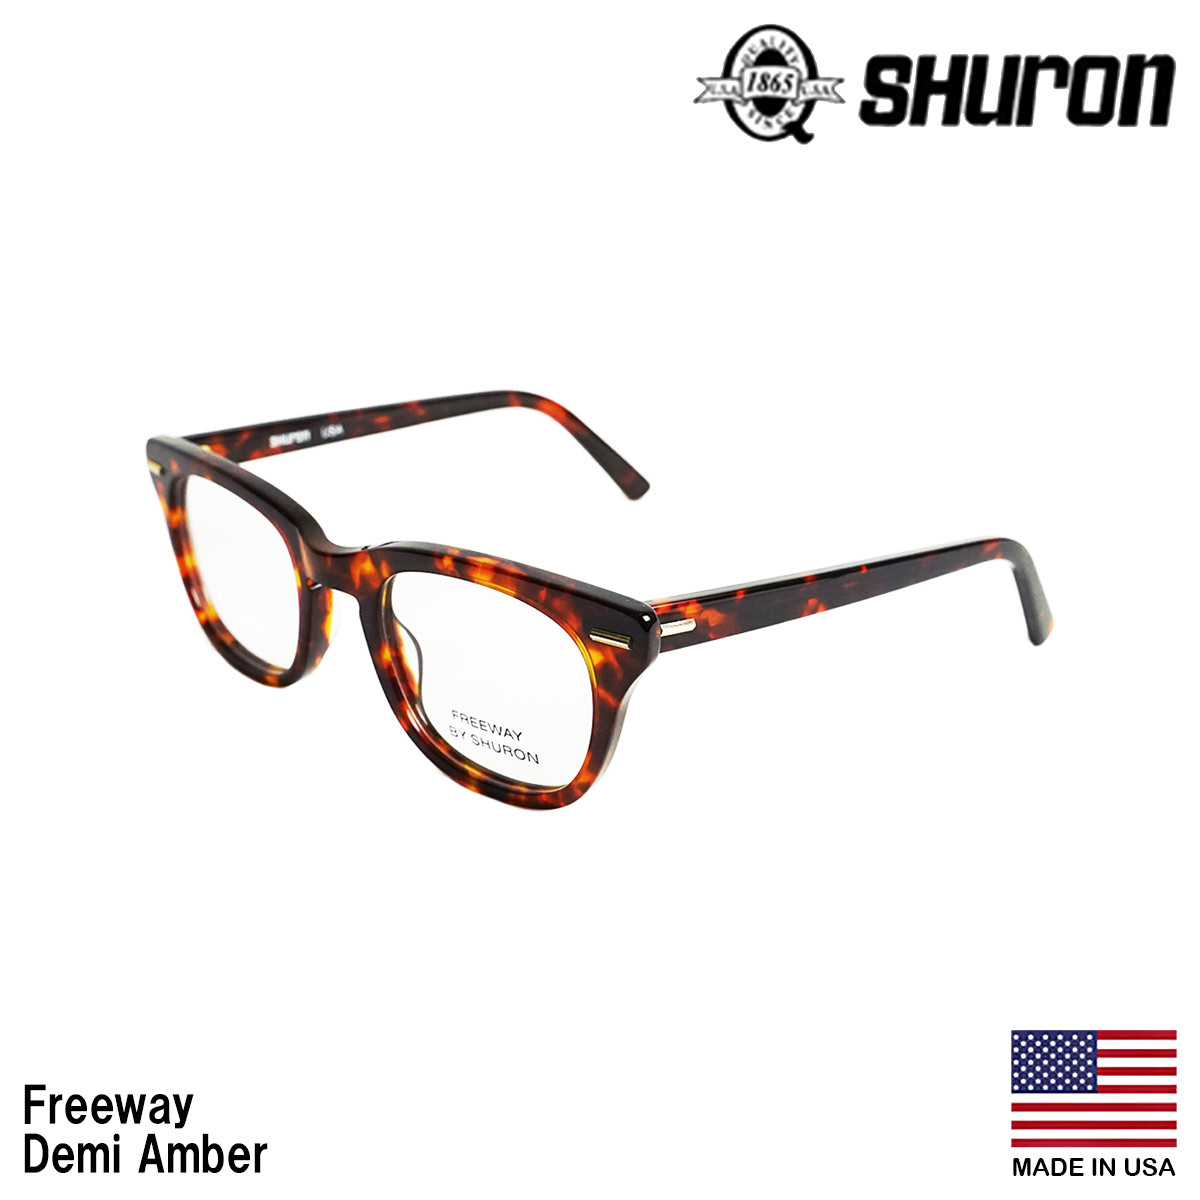 シュロン SHURON メガネ フレーム フリーウェイ 眼鏡 アメリカ製 米国製 ウエリントン セルフレーム エボニー デミアンバー